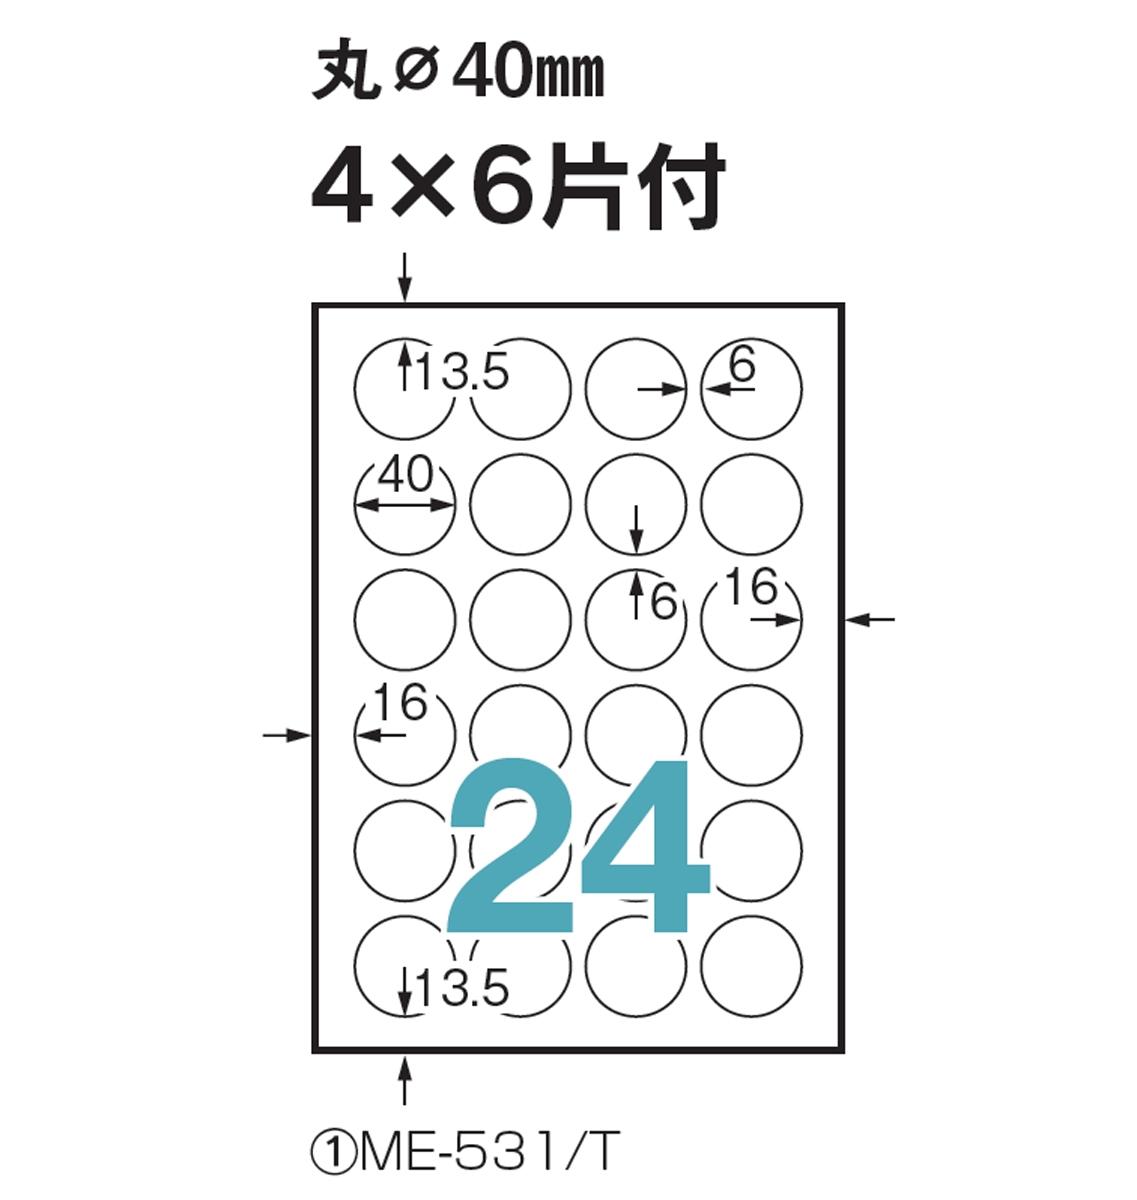 ME-531/T